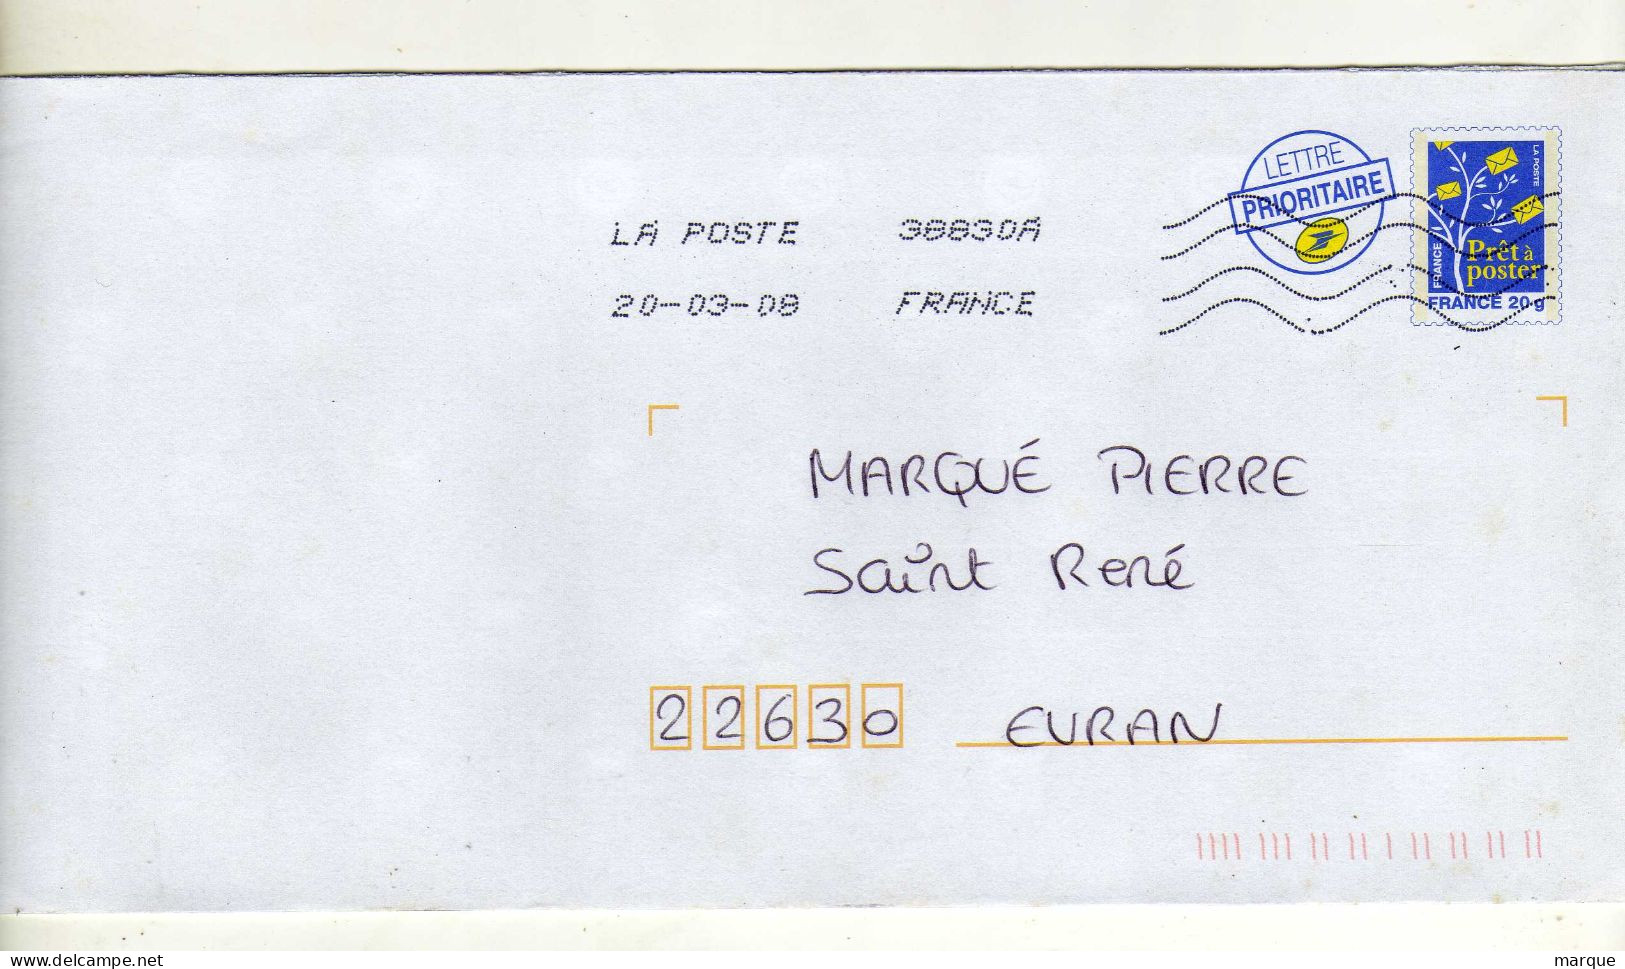 Enveloppe FRANCE Prêt à Poster Lettre Prioritaire 20g Oblitération LA POSTE 38830A 20/03/2008 - PAP: Ristampa/Logo Bleu